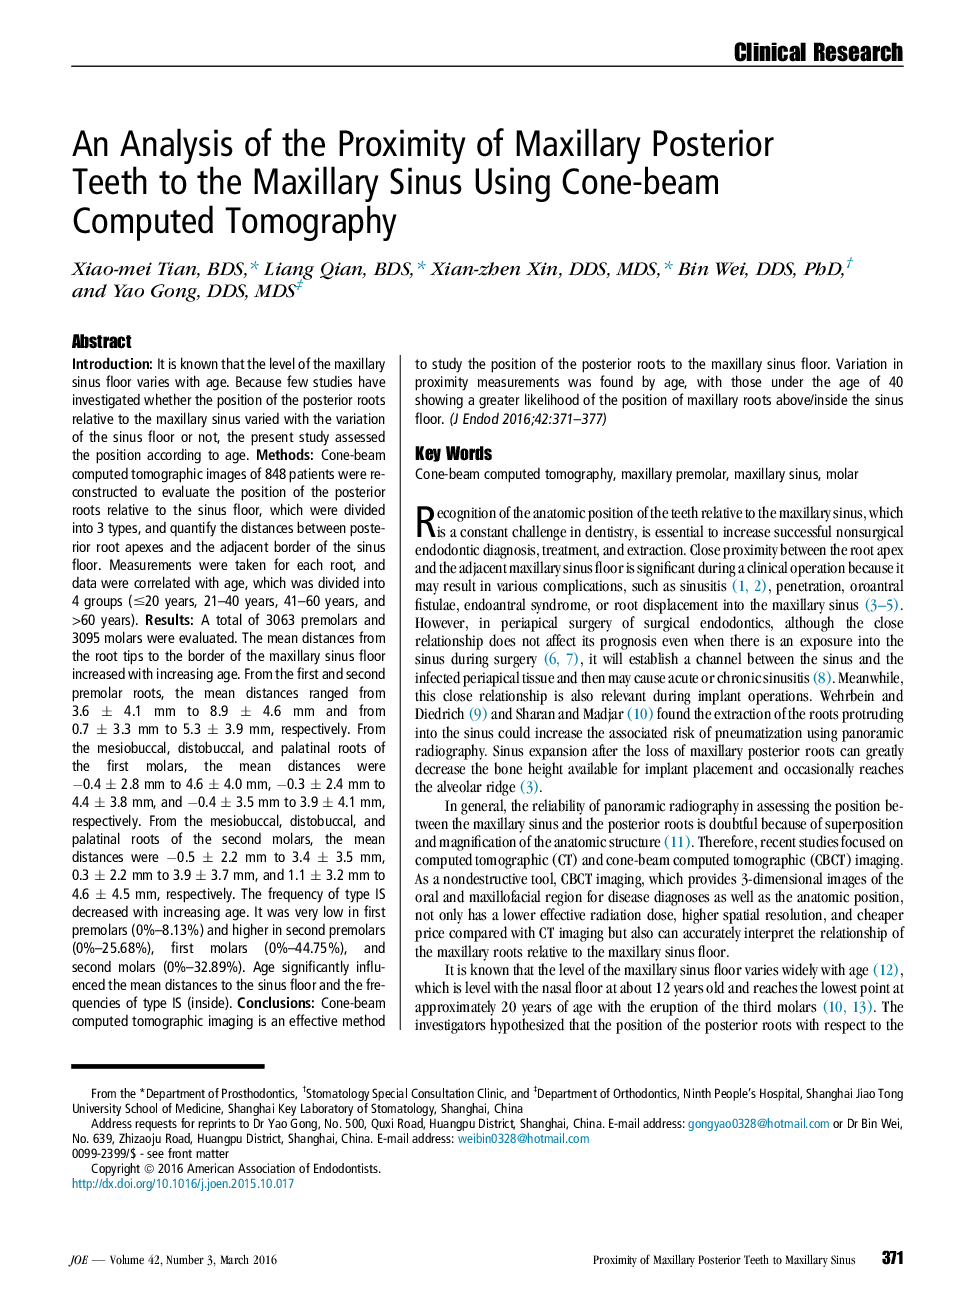 تحلیل نزدیکی دندان های خلفی ماگزیلاری به سینوس ماگزیلاری با استفاده از توموگرافی کامپیوتری پرتو کروی 